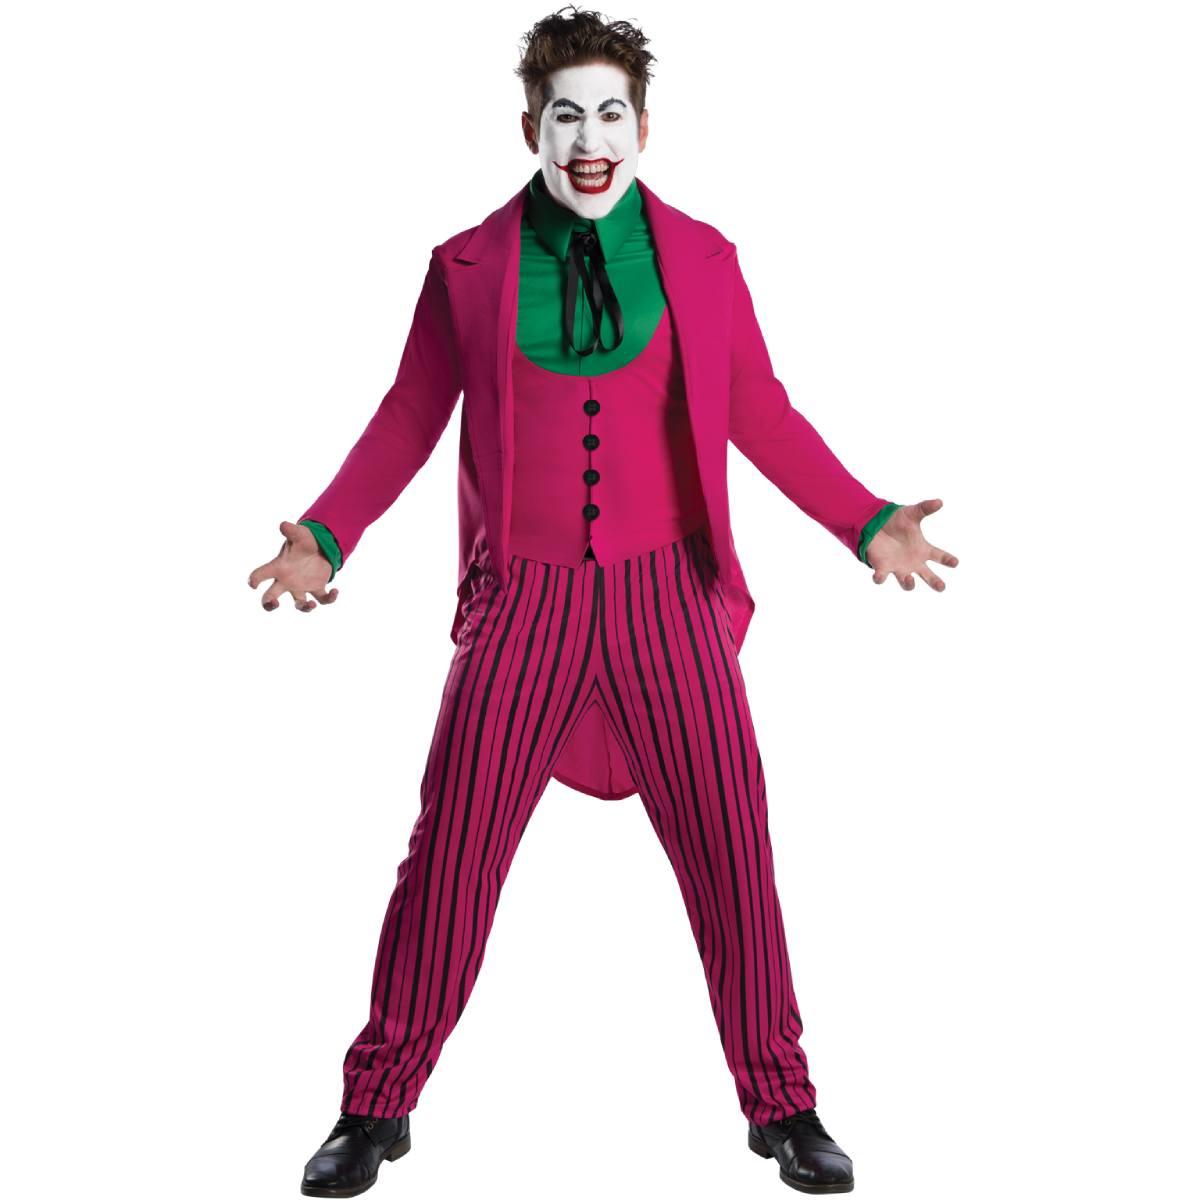 Retro 60's TV The Joker Costume for Men by Rubies 300541 | Karnival Costumes